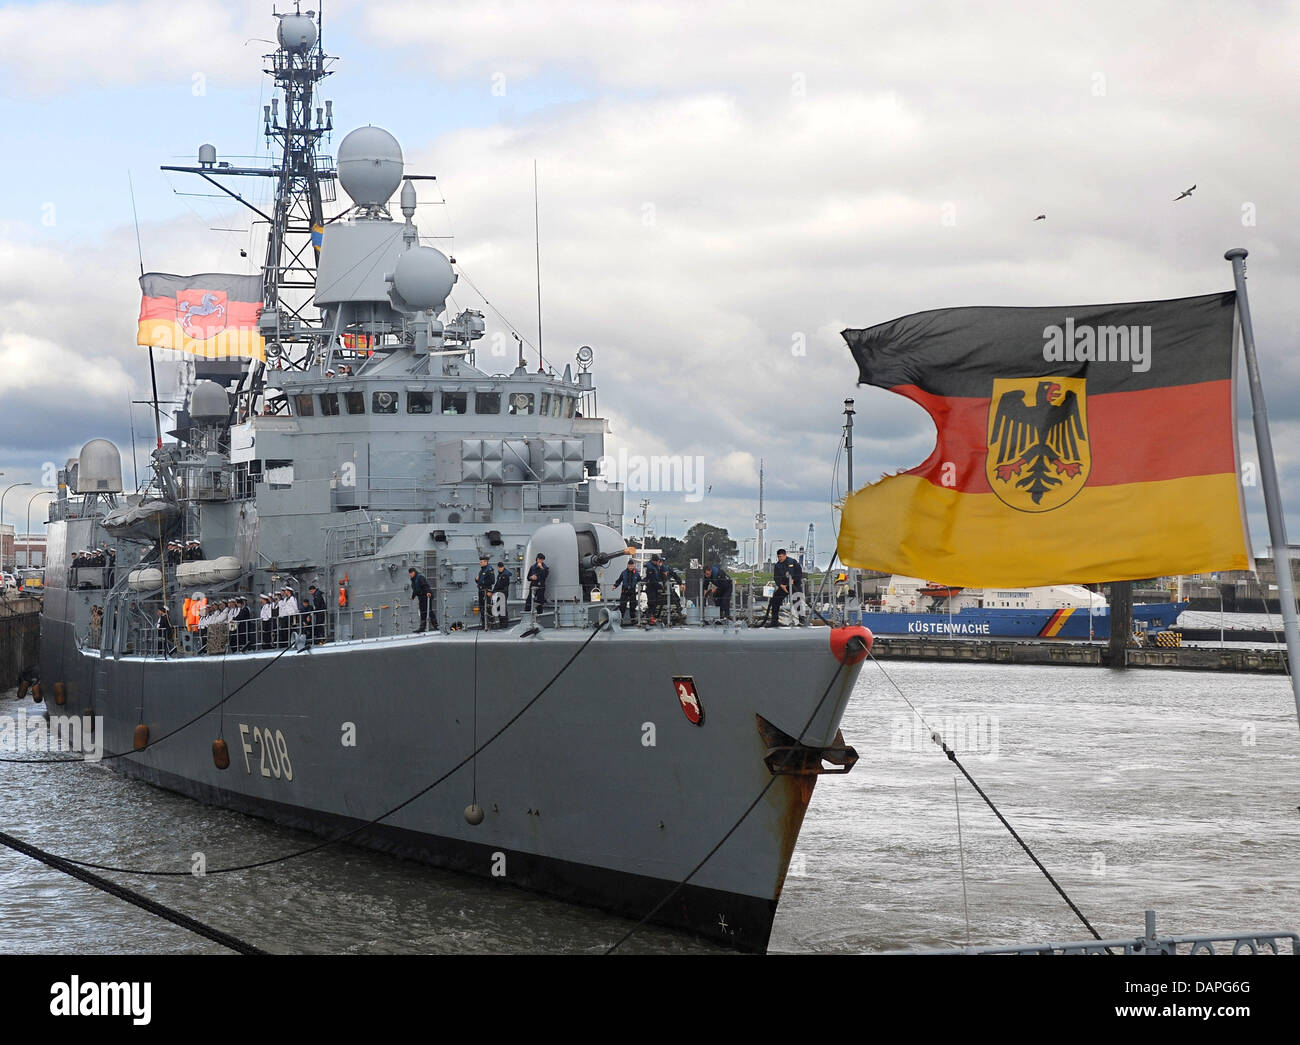 Marina tedesca immagini e fotografie stock ad alta risoluzione - Alamy